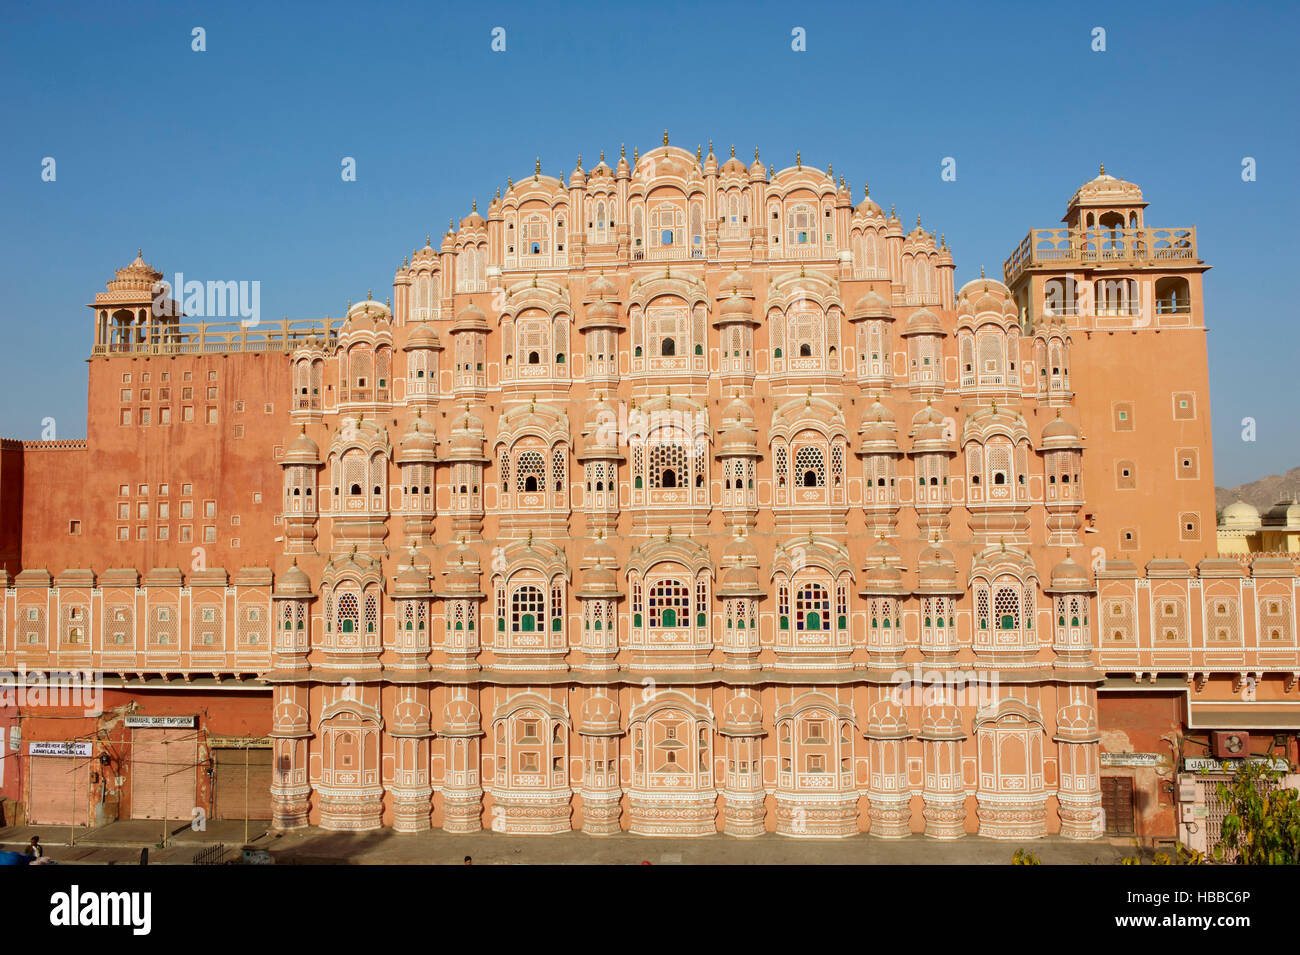 Inde, Rajasthan, Jaipur la ville rose, le palais des vents (Hawa Mahal). // L'Inde, Rajasthan, Jaipur la ville rose, le palais des vents (Hawa Mahal). Banque D'Images